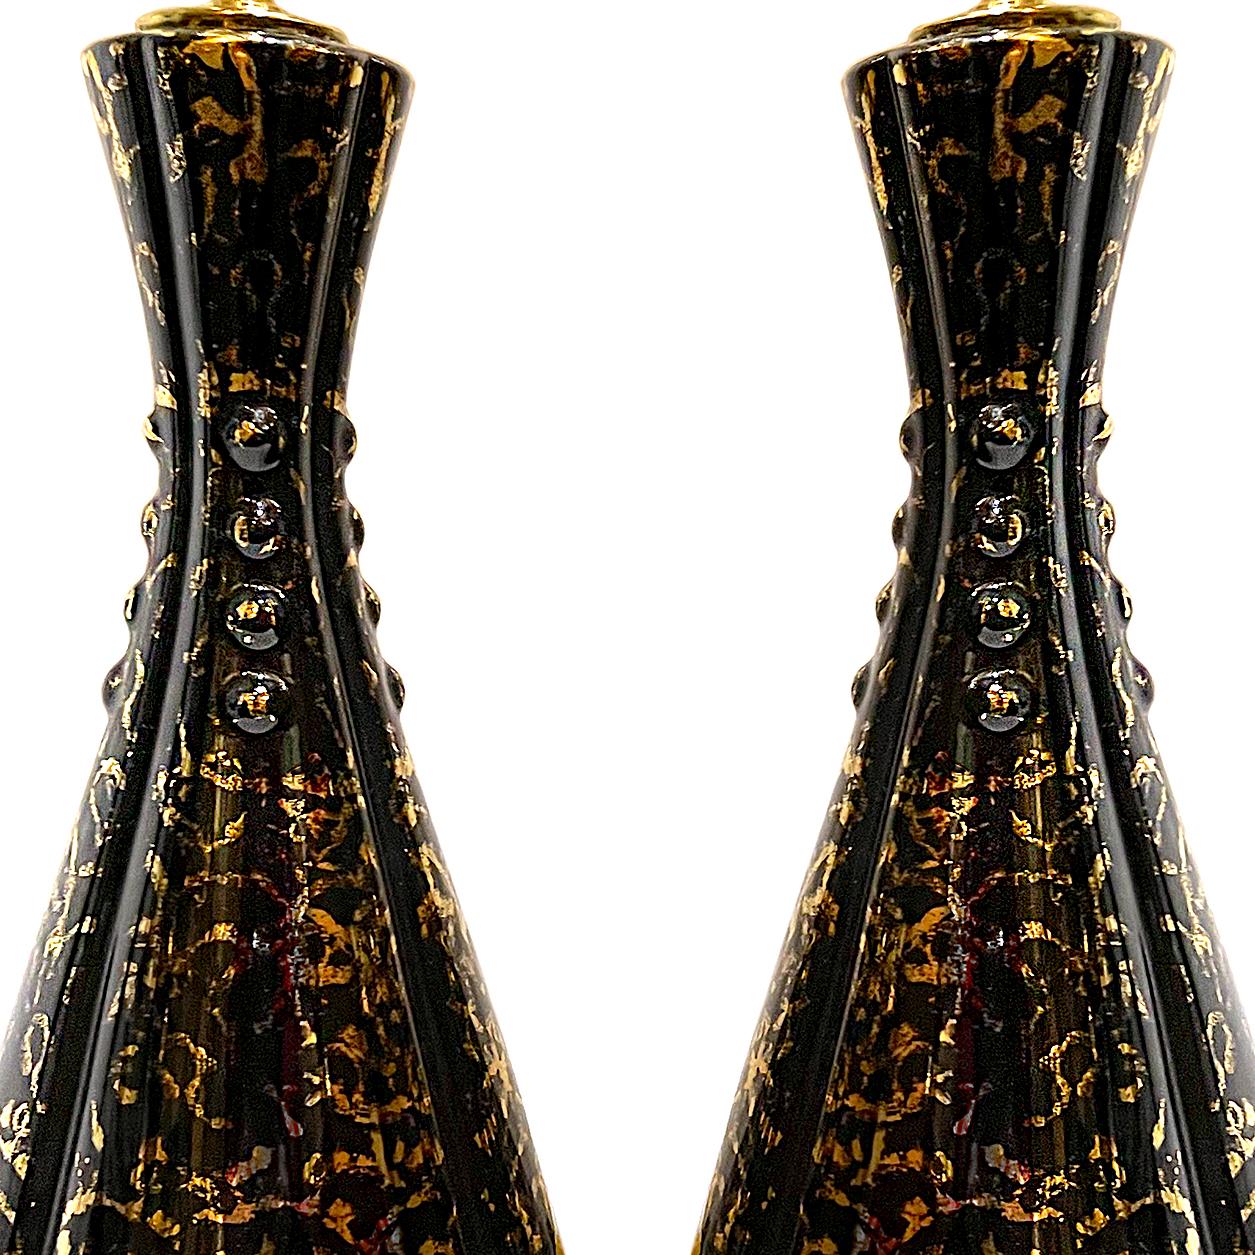 Une paire de lampes italiennes en porcelaine noire avec décoration dorée, datant des années 1950.

Mesures :
Hauteur du corps : 15,5